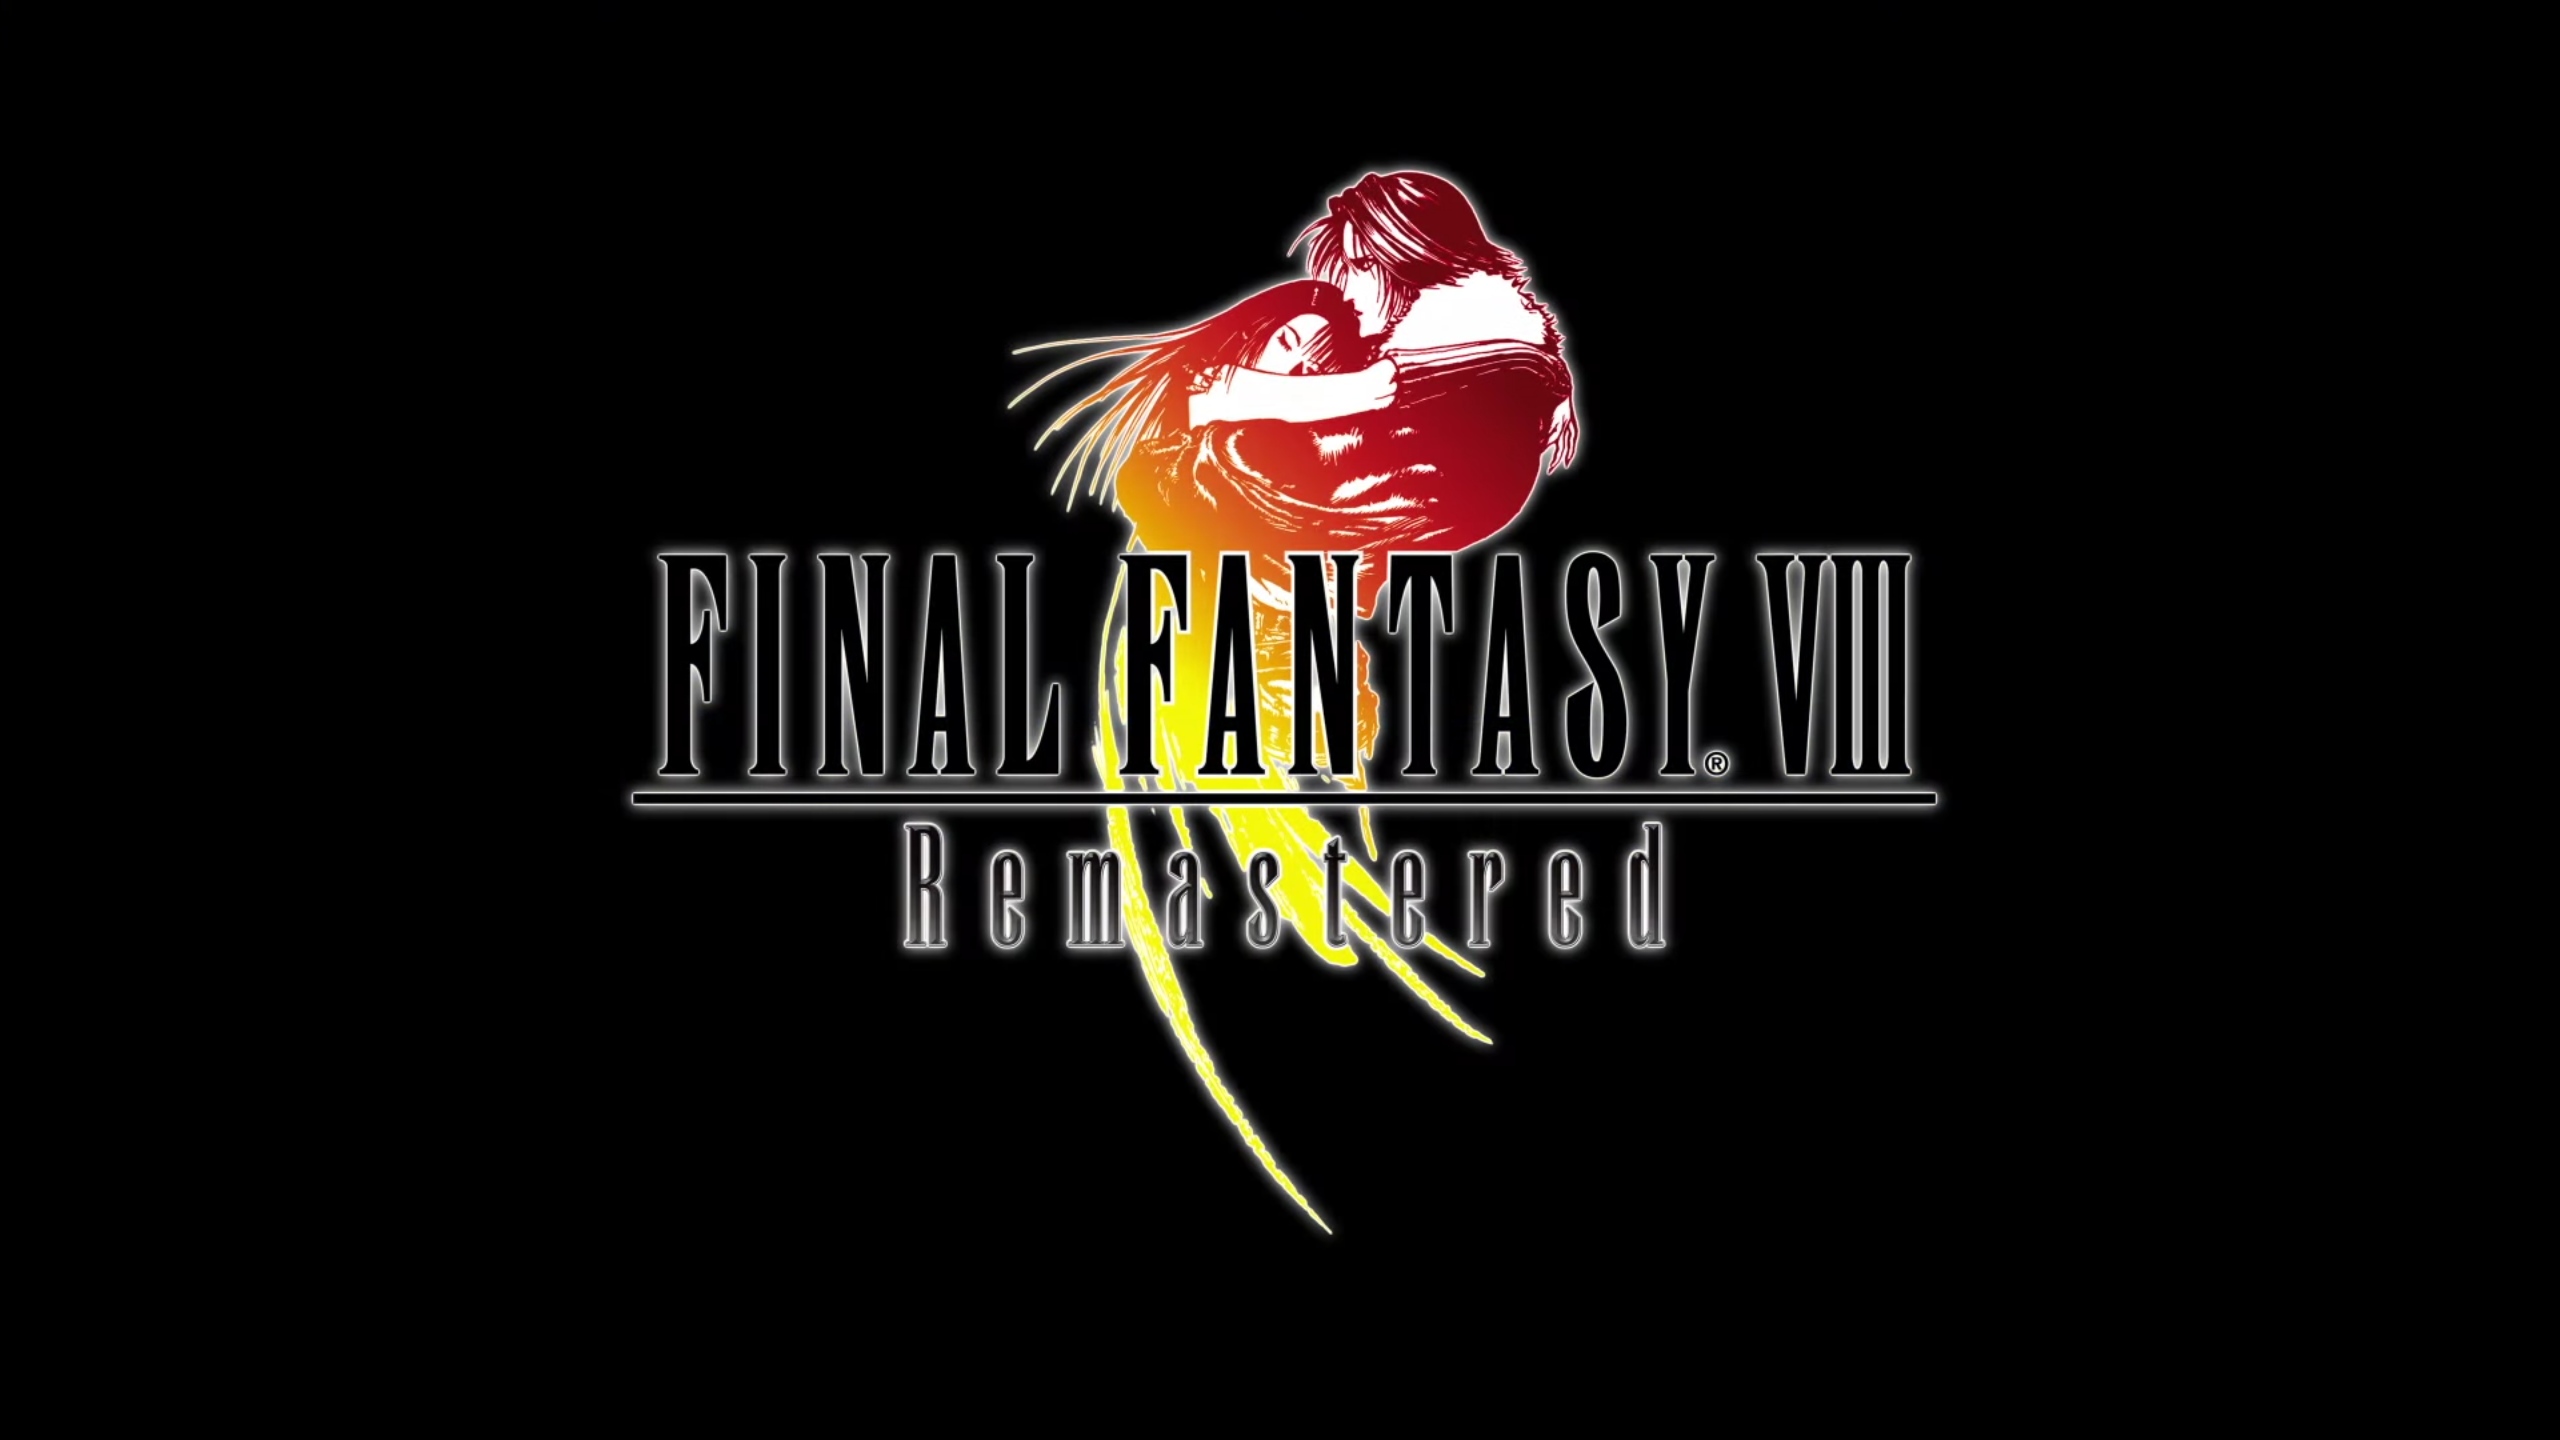 FINAL FANTASY VIII Remastered akan diluncurkan pada PC dan konsol pada 3 September - Trailer Gameplay Baru